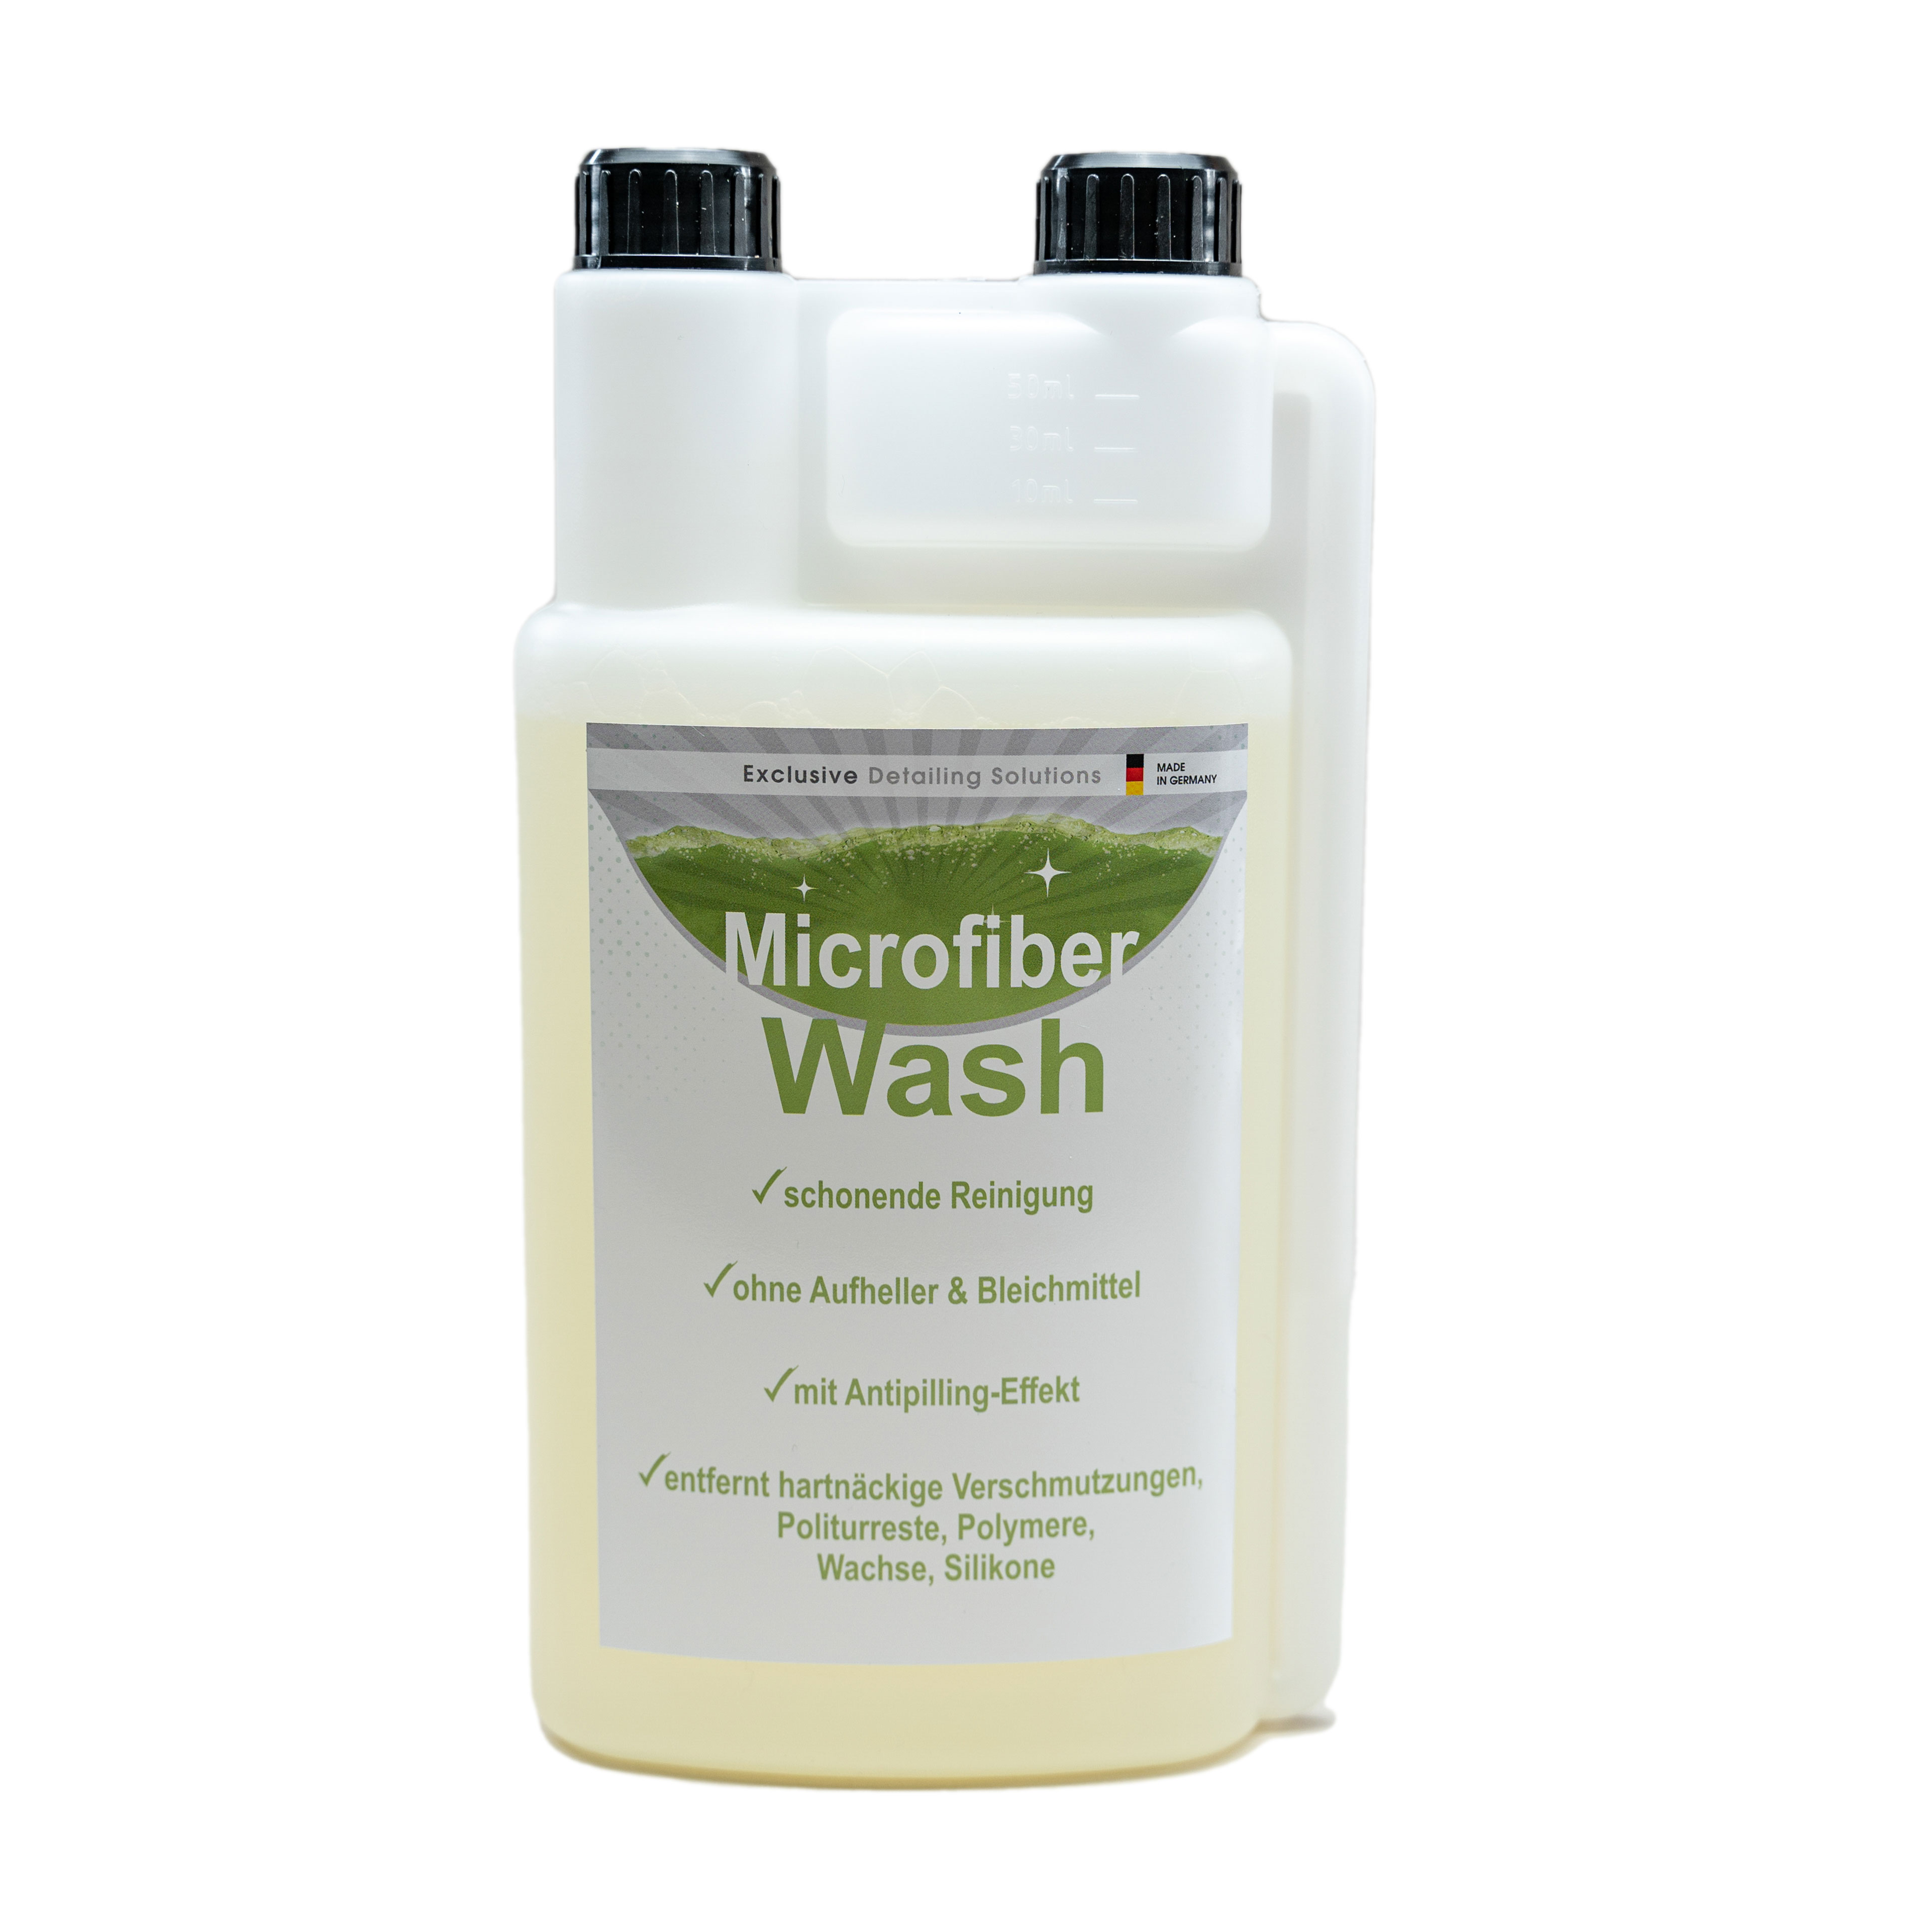 FreyChemie Microfiber Wash - Mikrofaserwaschmittel